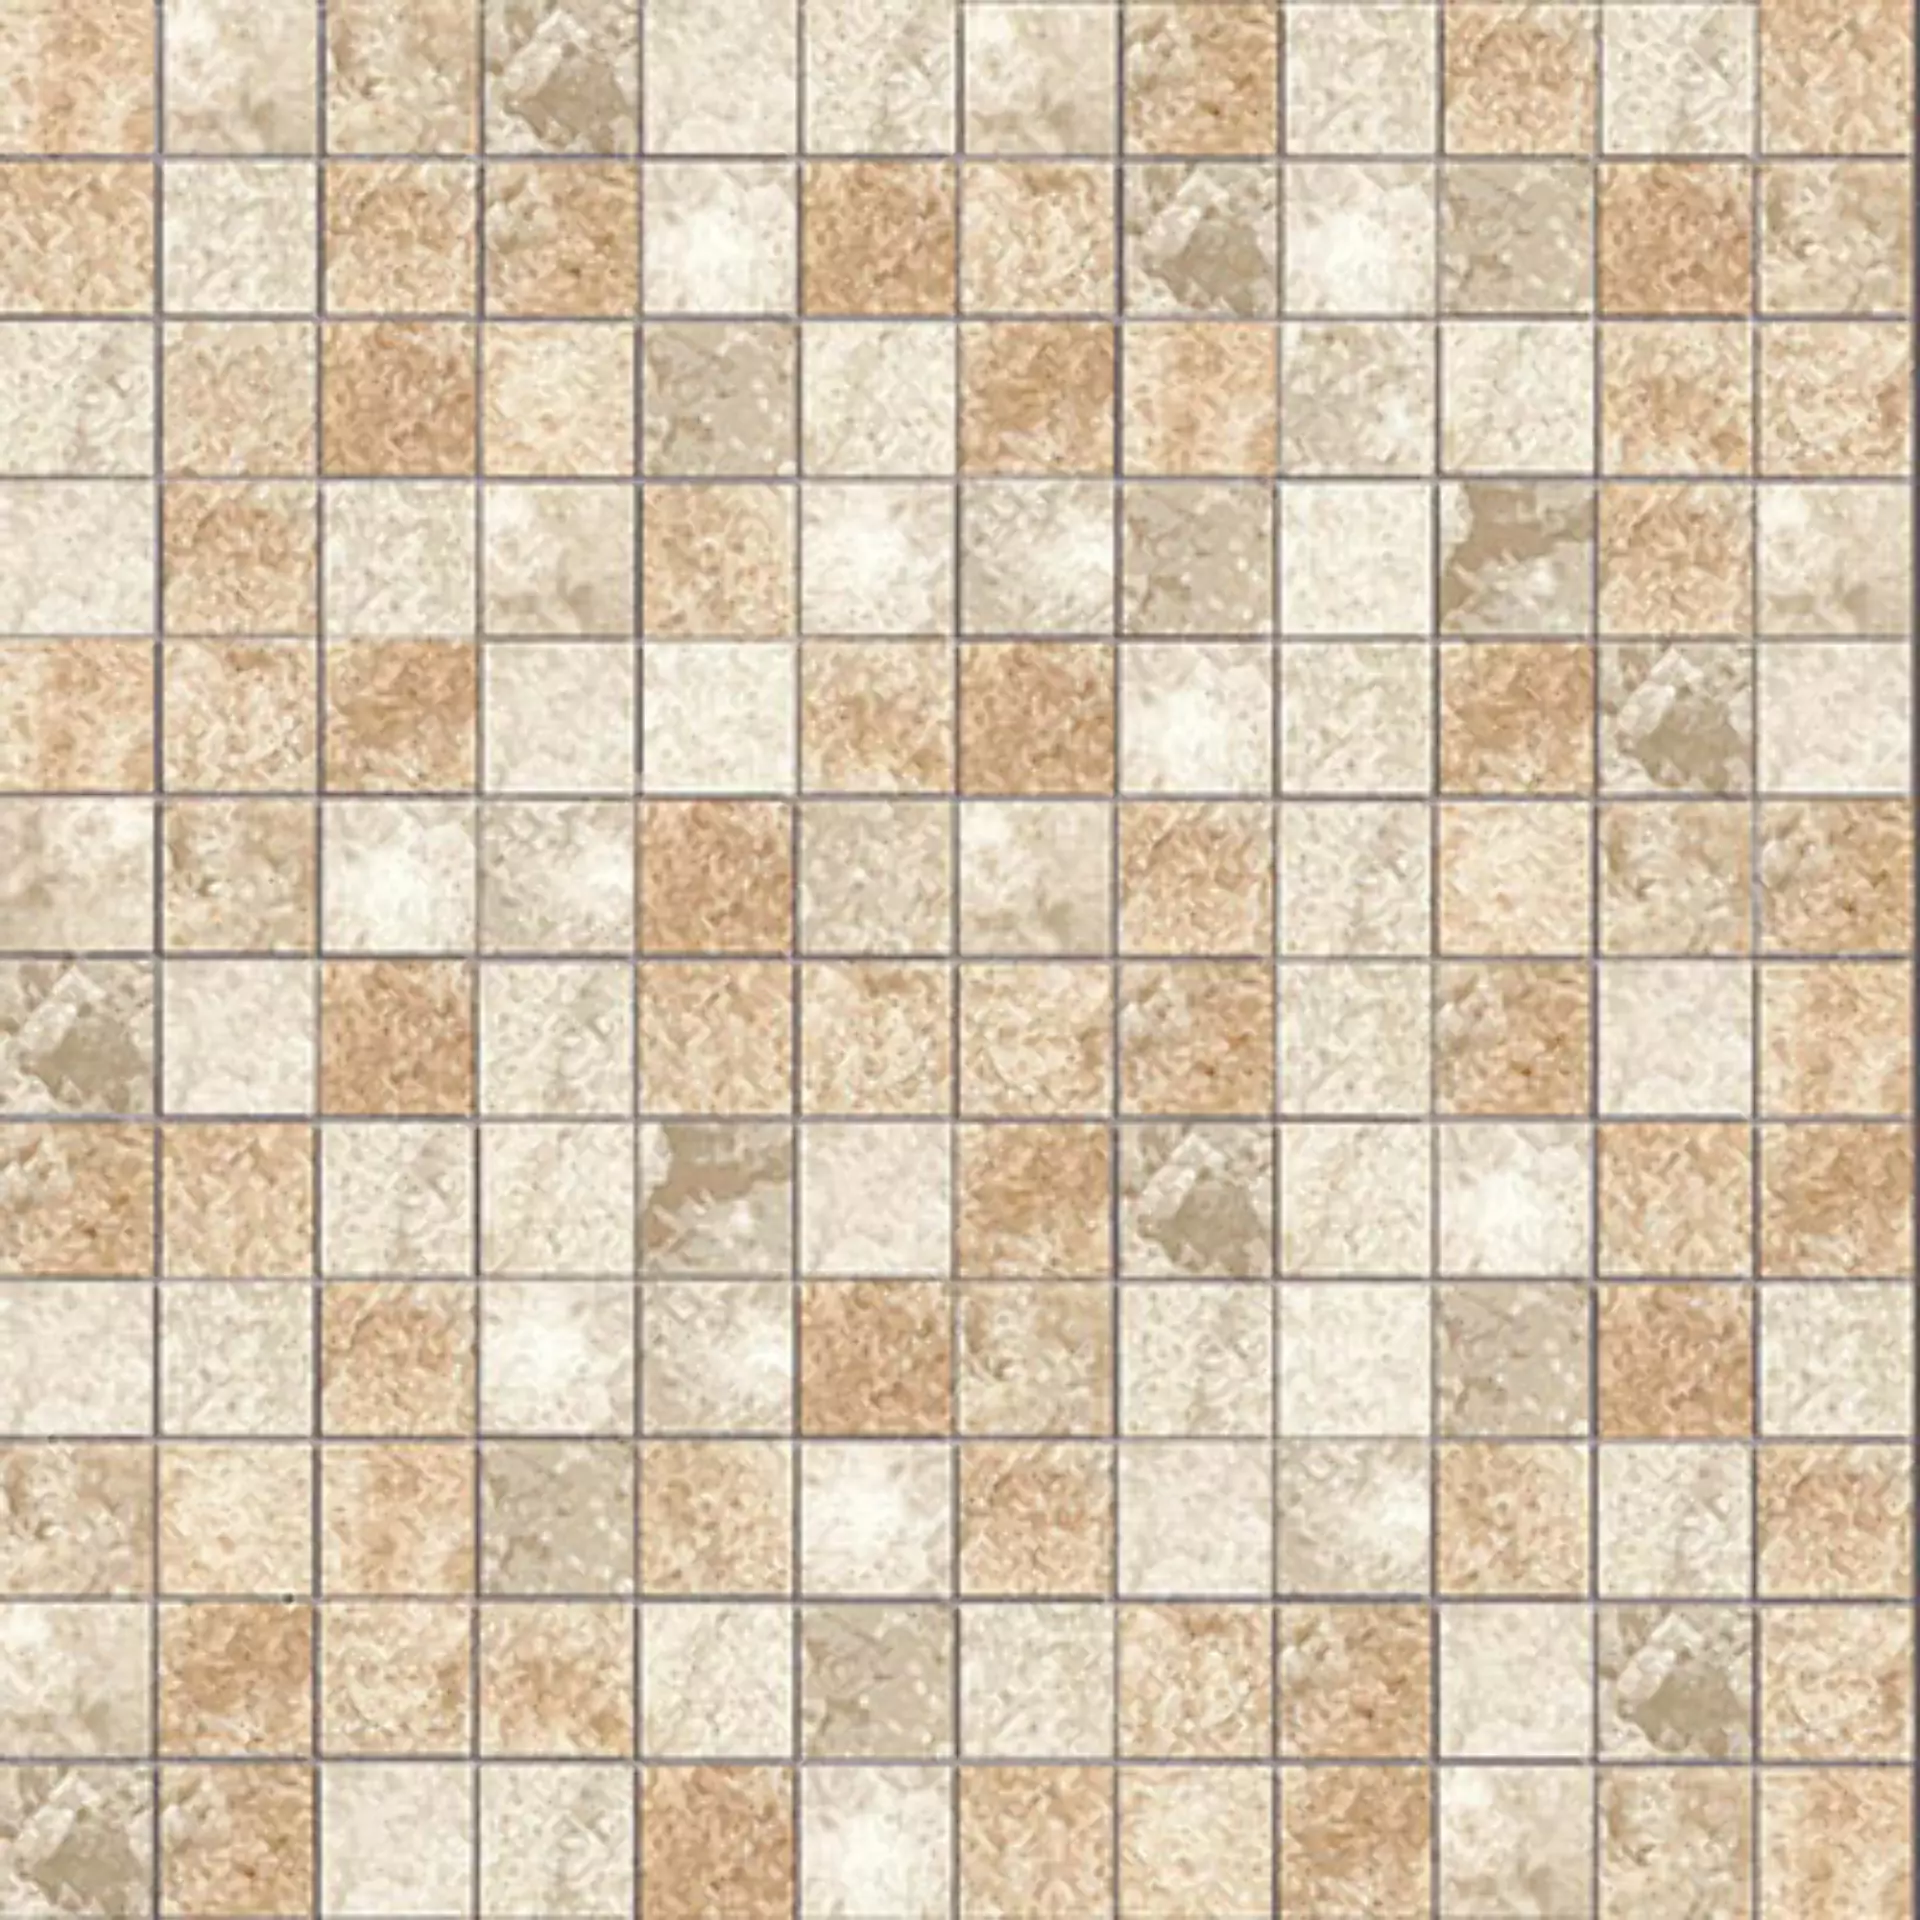 Casalgrande Onici Miele Naturale – Matt Miele 11704707 natur matt 30x30cm Mosaik